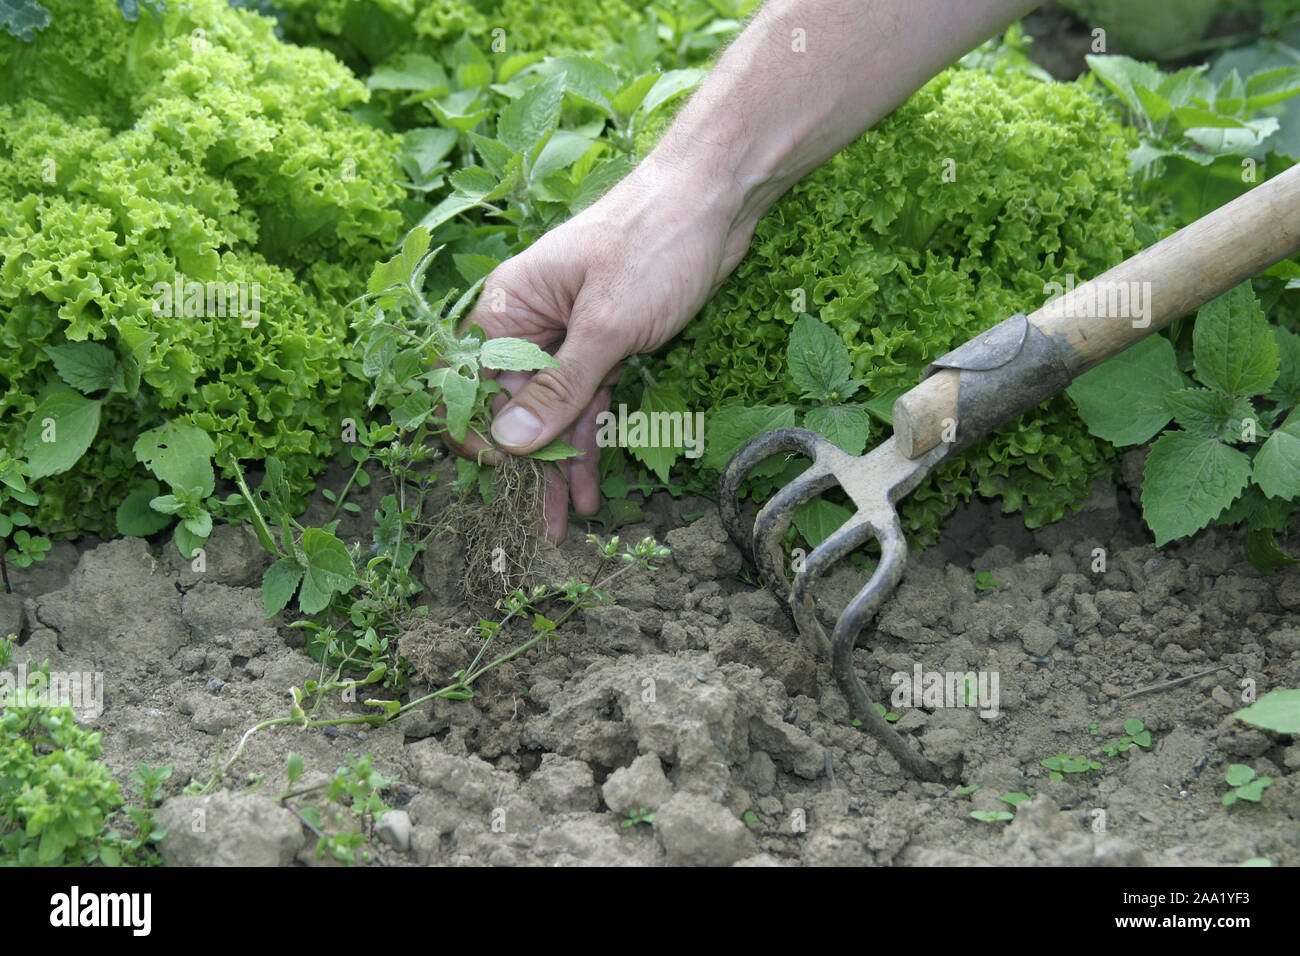 Eine Hand jätet Unkraut in einem Salatbeet / A hand is weeding plants in a bed with salad Stock Photo